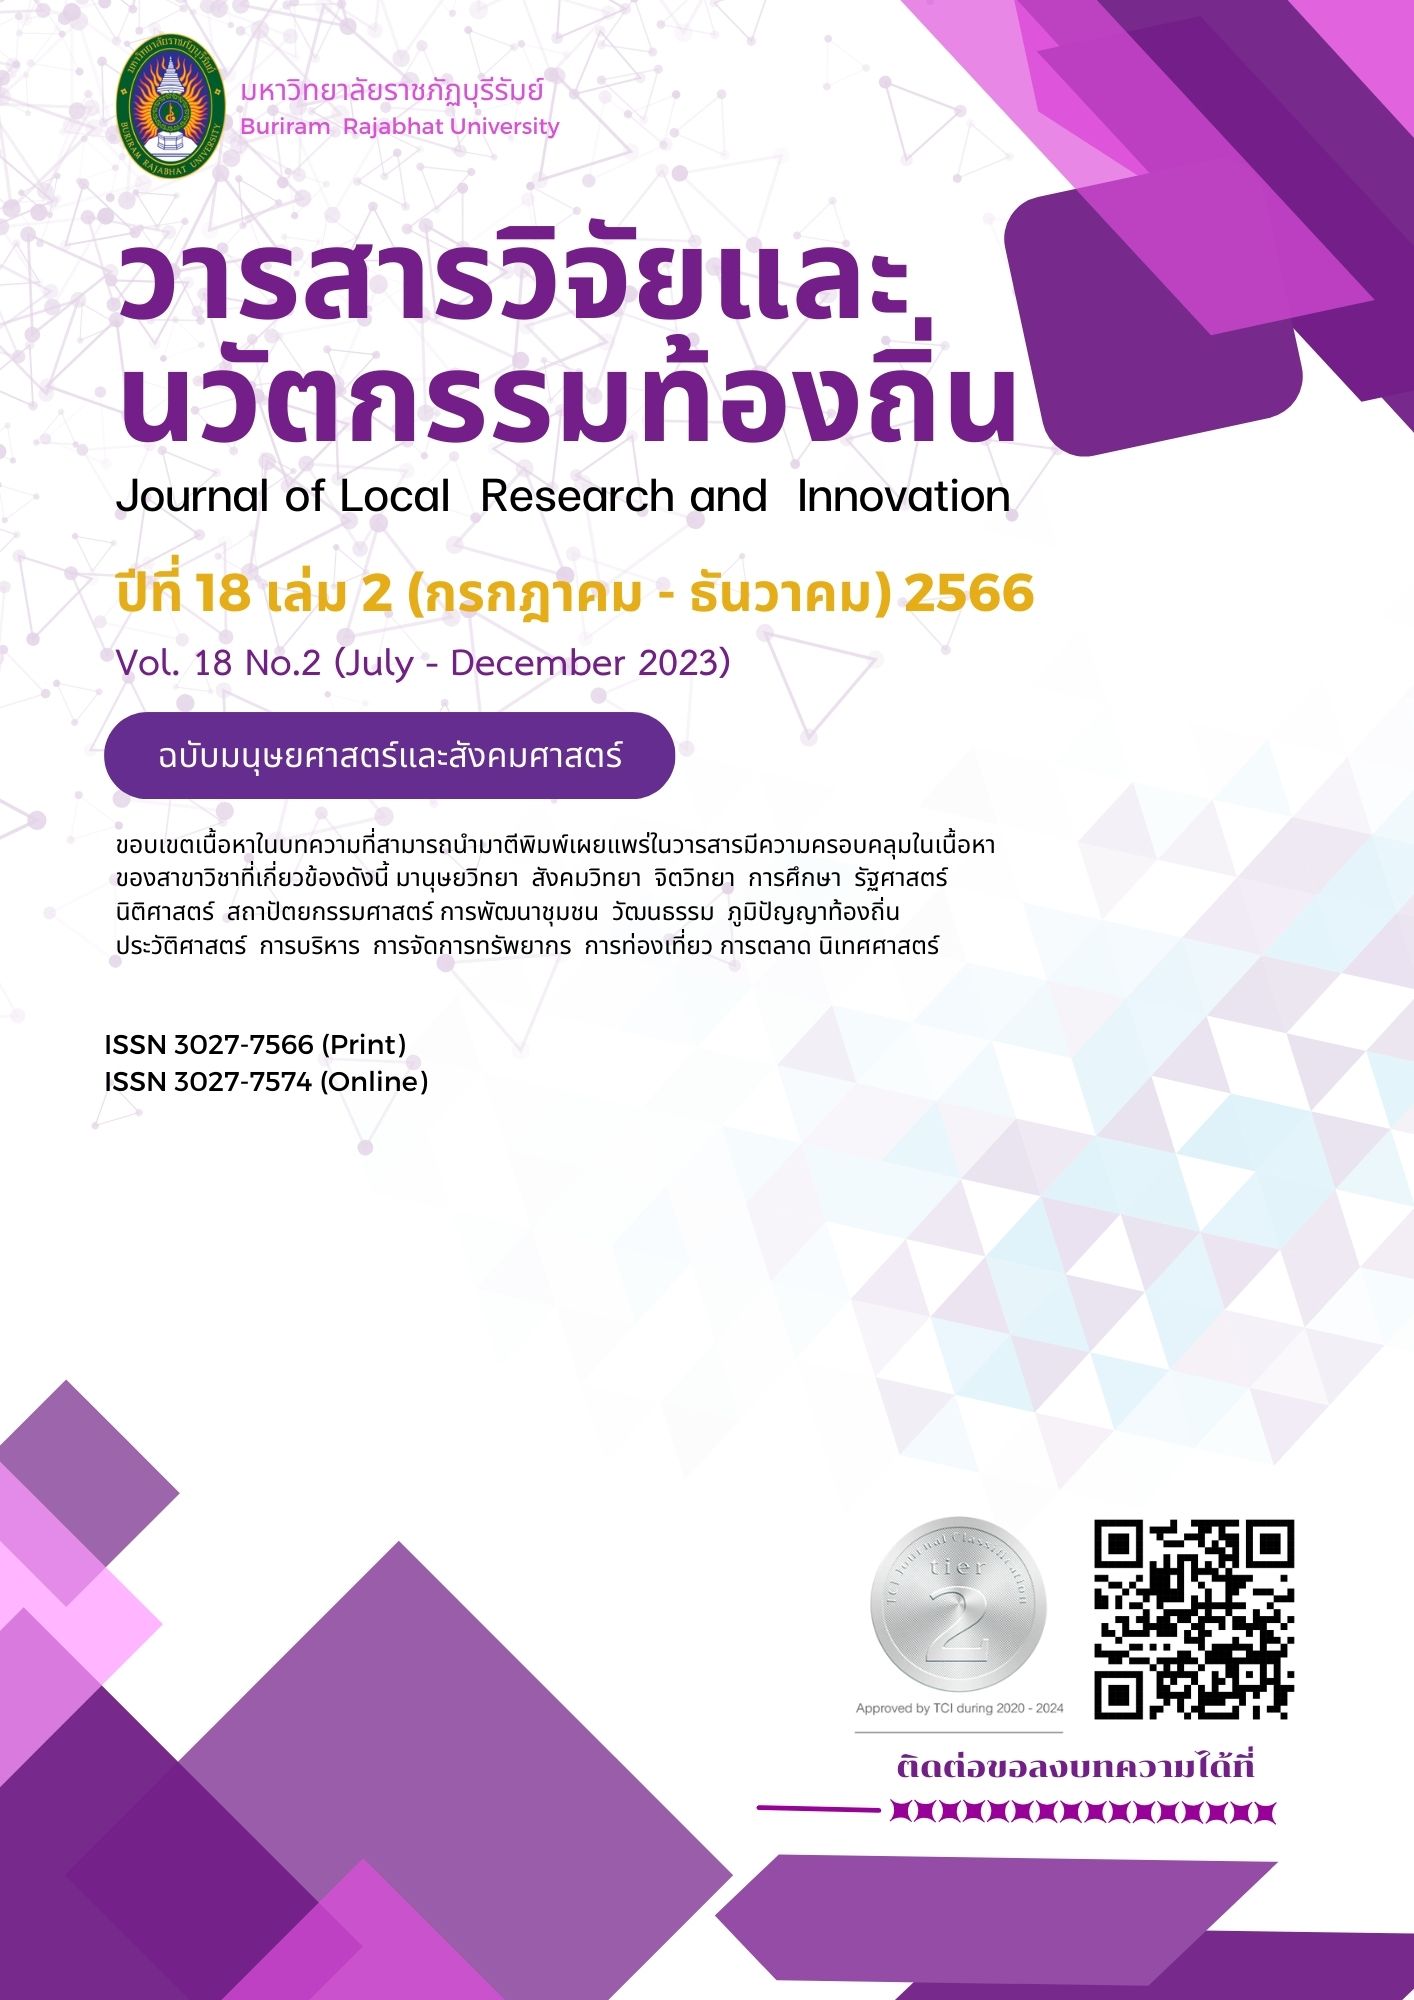 นิตยสารฉลาดซื้อกับบทบาทของระบบเฝ้าระวังสินค้าและบริการด้านสุขภาพต่อผู้บริโภคในประเทศไทย